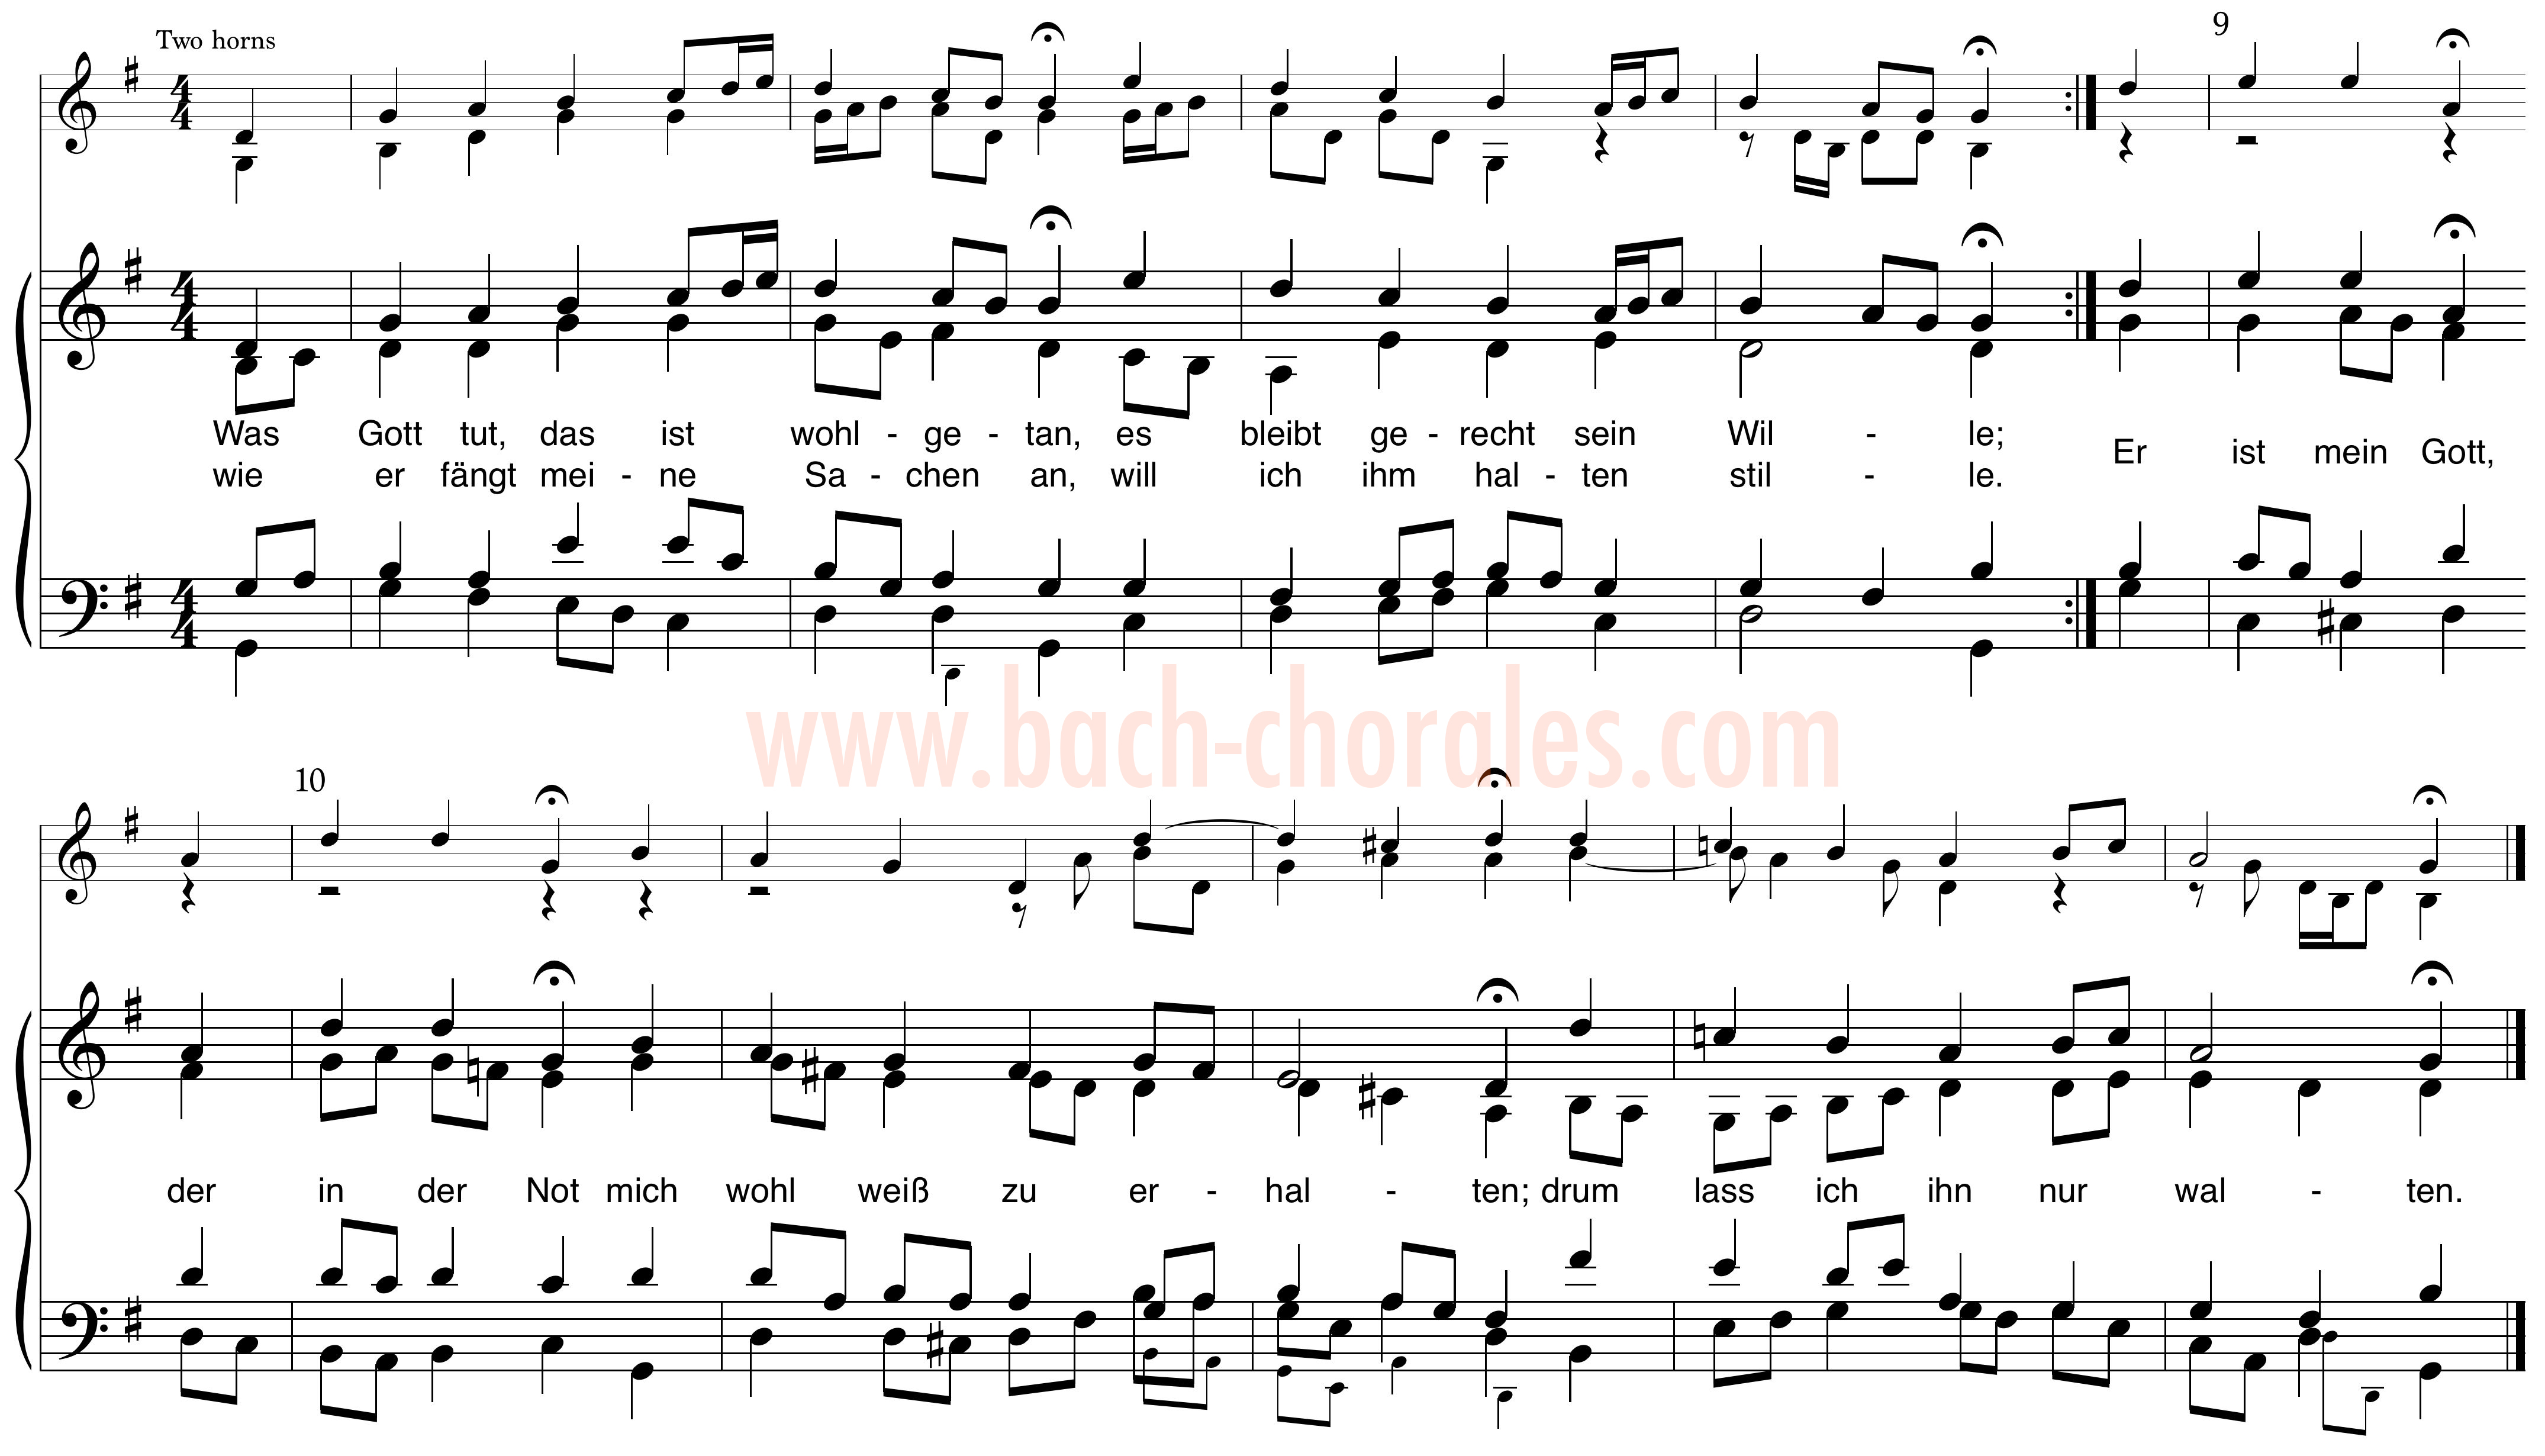 notenbeeld BWV 250 op https://www.bach-chorales.com/